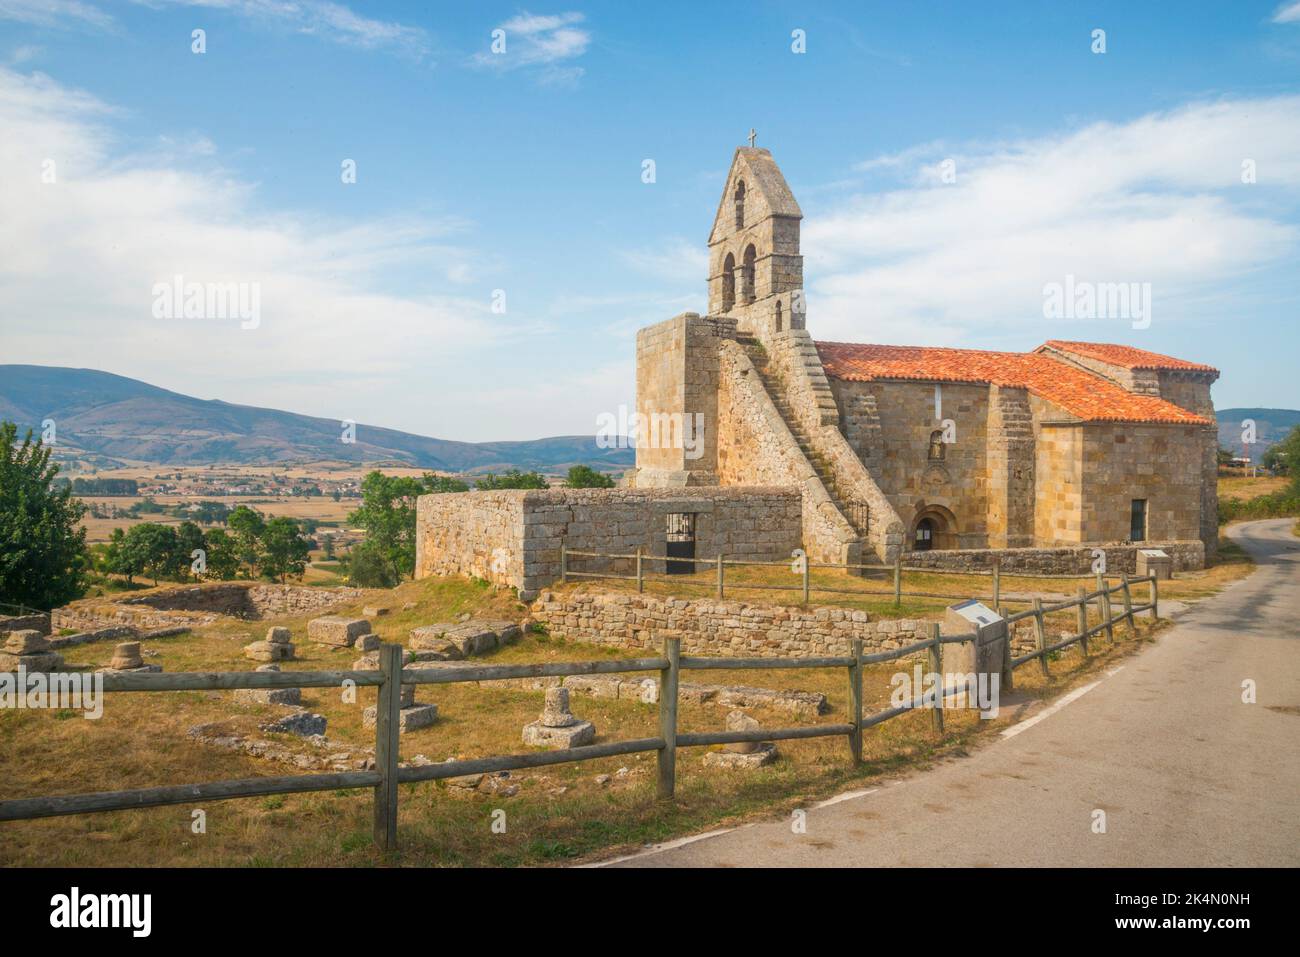 Facade of Santa Maria church. Retortillo, Cantabria, Spain. Stock Photo